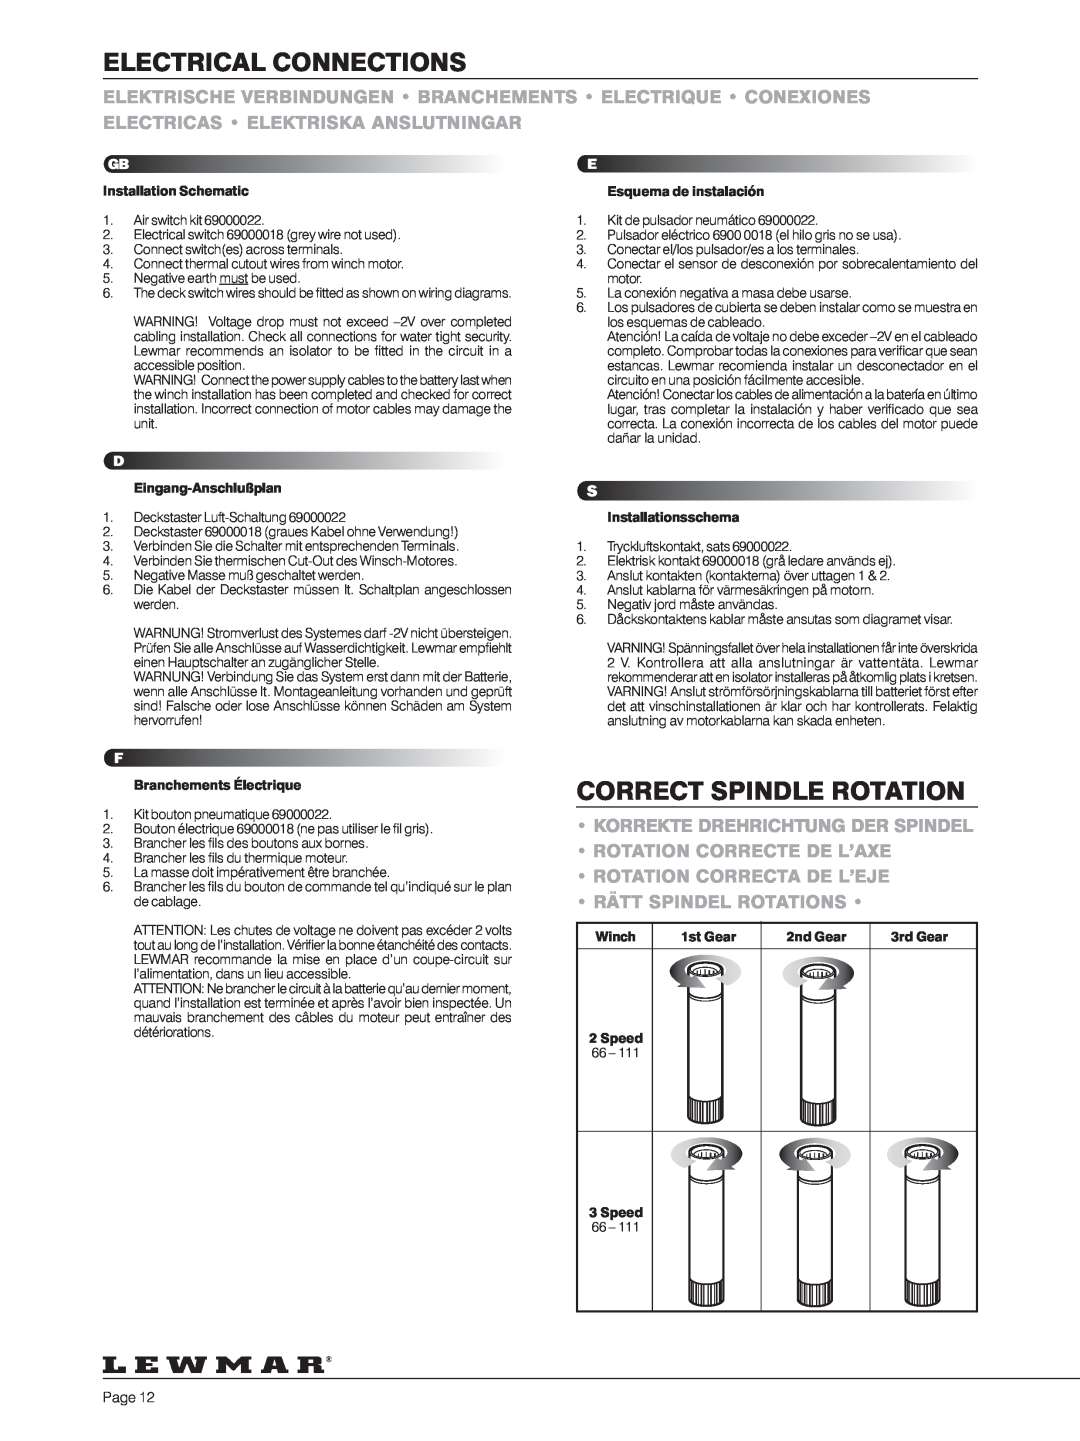 Lewmar 40-111 Electrical Connections, Correct Spindle Rotation, Korrekte Drehrichtung Der Spindel, Rätt Spindel Rotations 